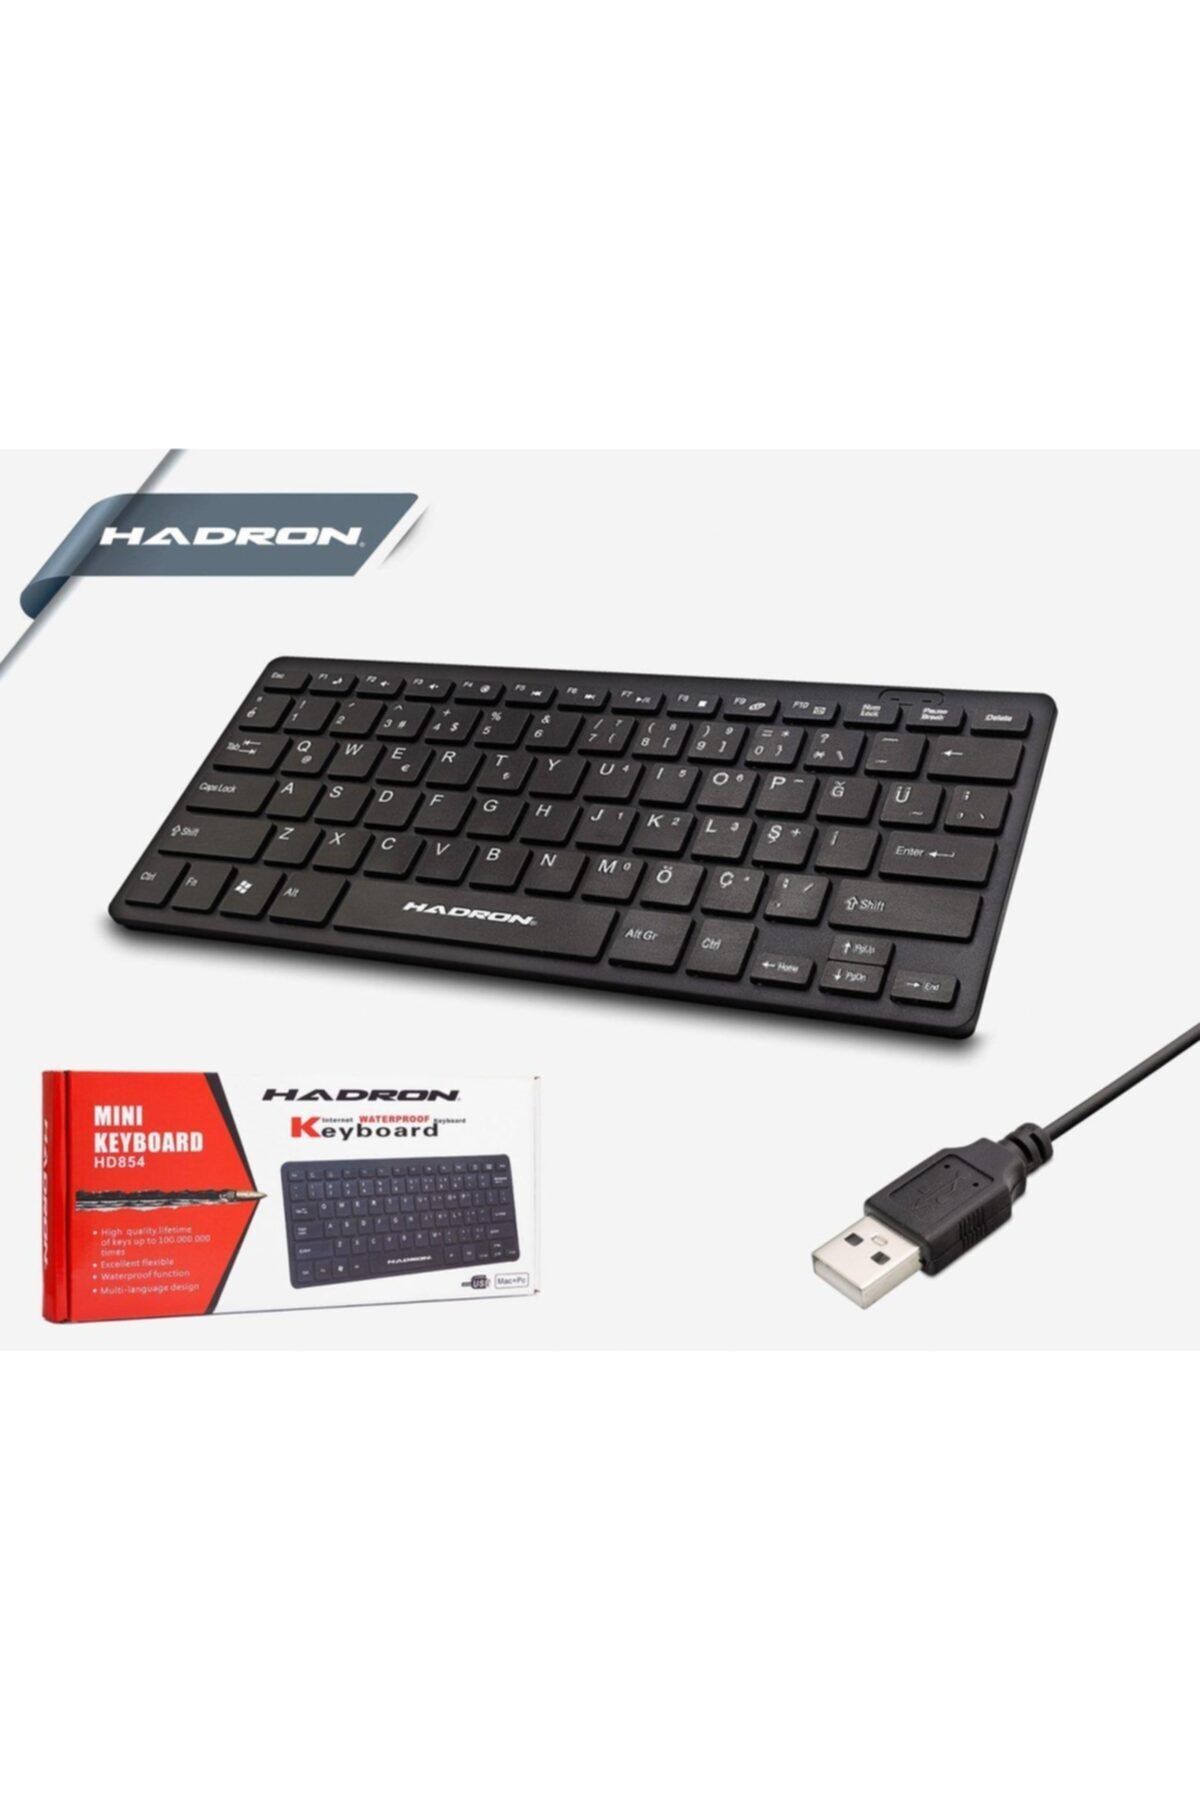 HADRON Hd854 Mini Klavye - Kargo Ücretsiz